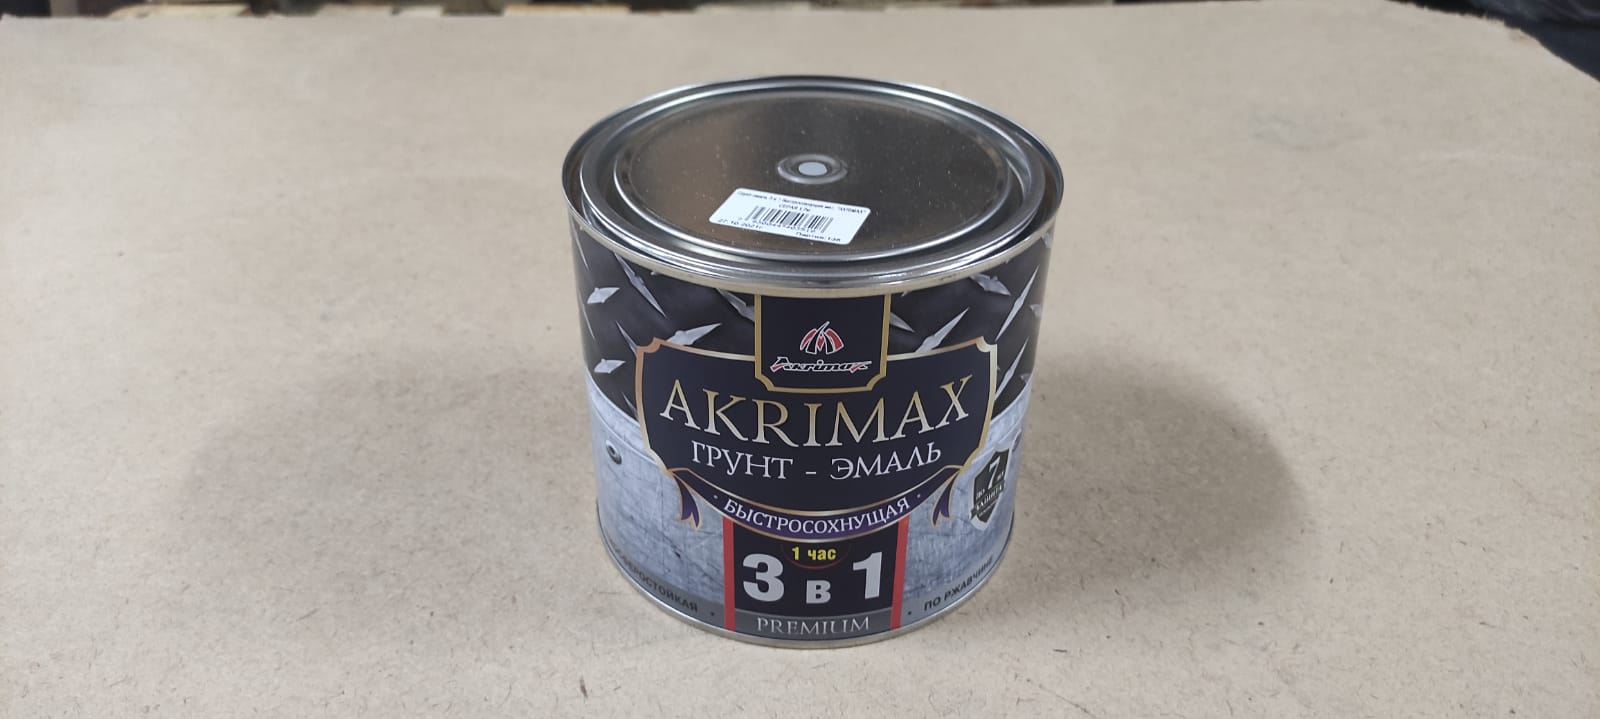 Грунт - эмаль по ржавчине 3 в1 быстросохнущая матовая Akrimax 1,7 кг (коричневая)